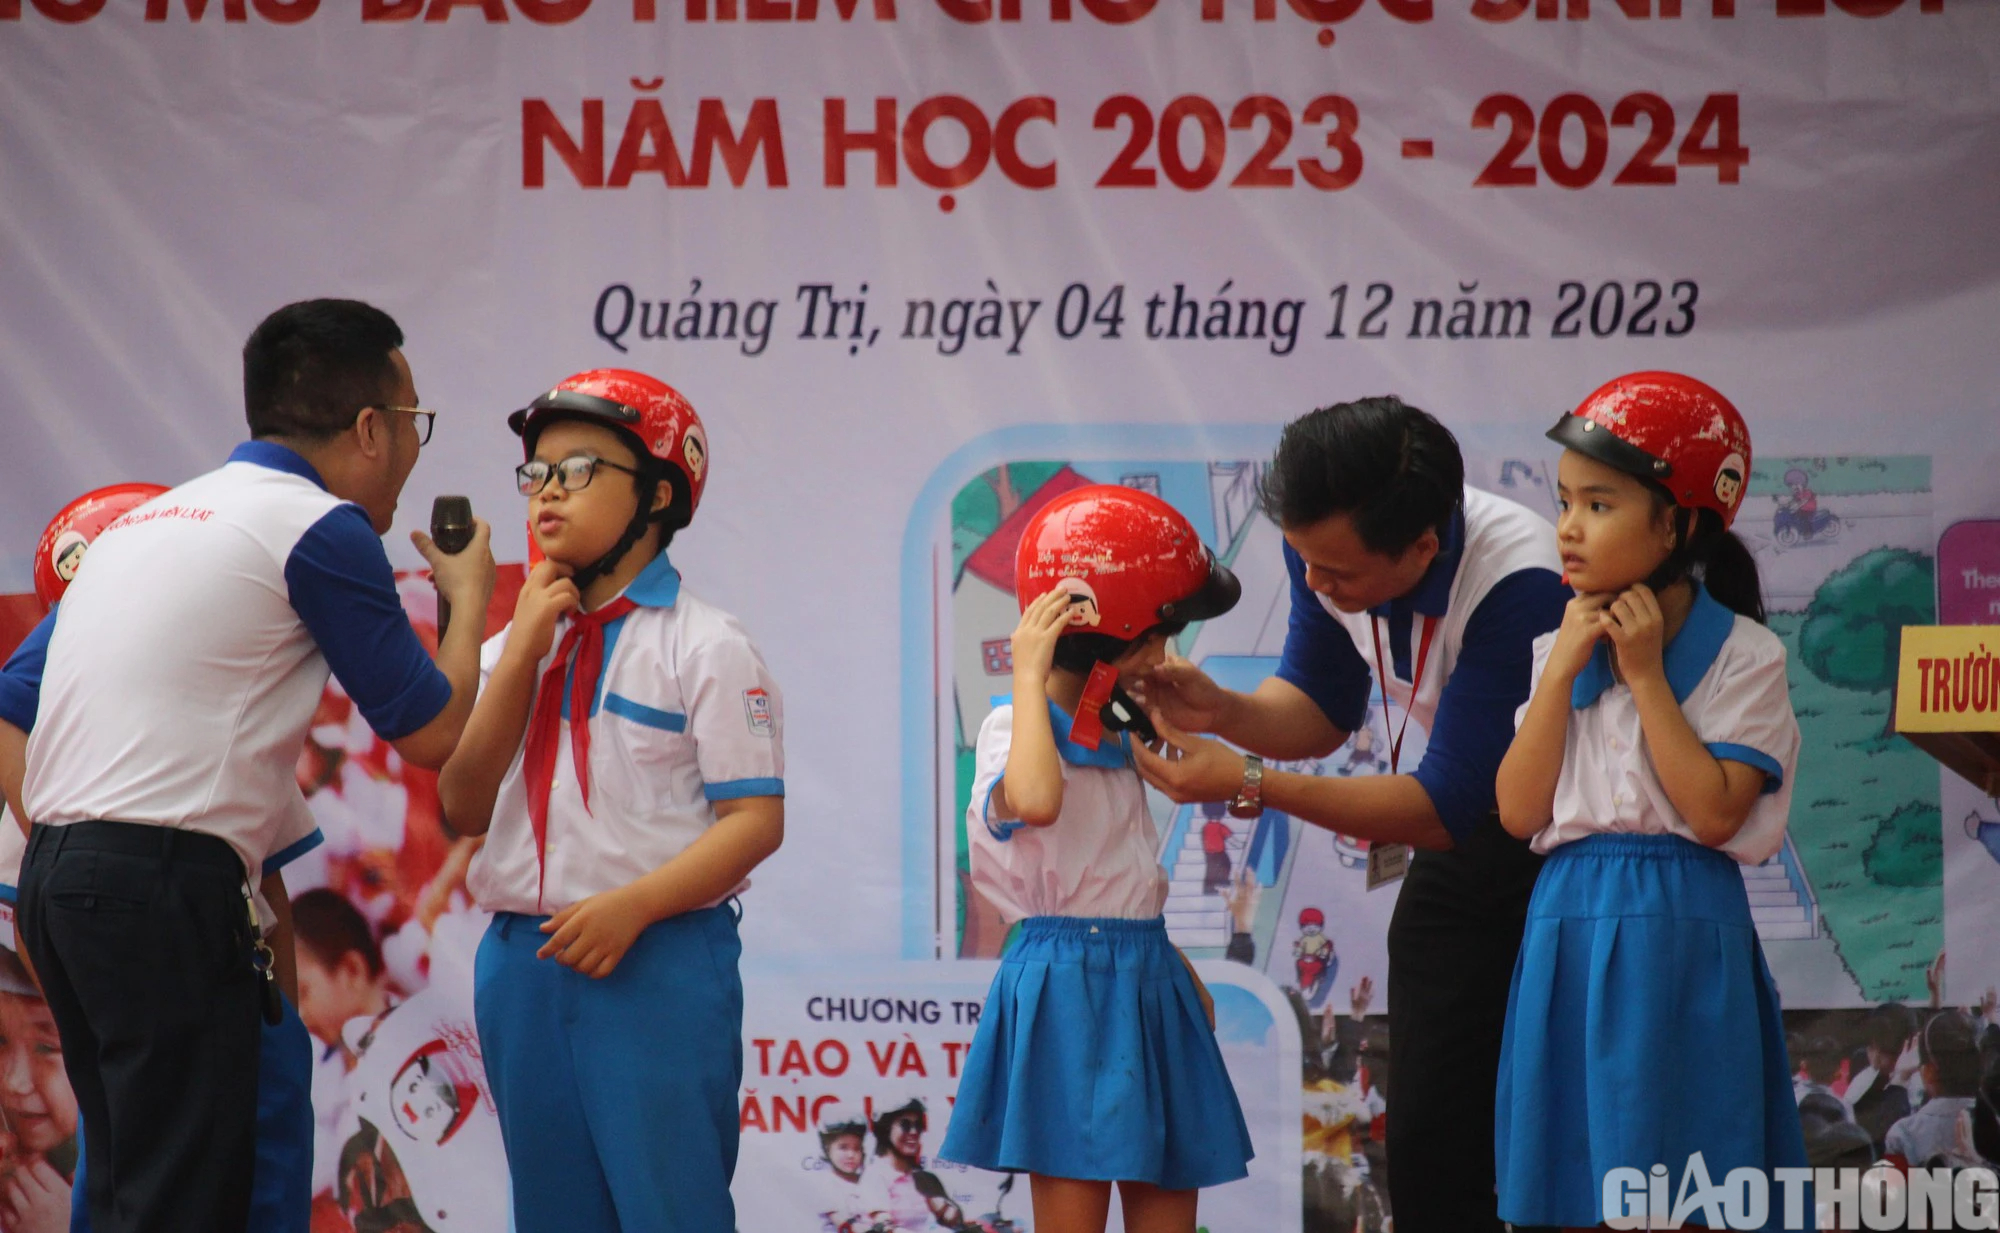 Trao tặng hơn 13.300 mũ bảo hiểm “Giữ trọn ước mơ” cho học sinh ở Quảng Trị - Ảnh 6.